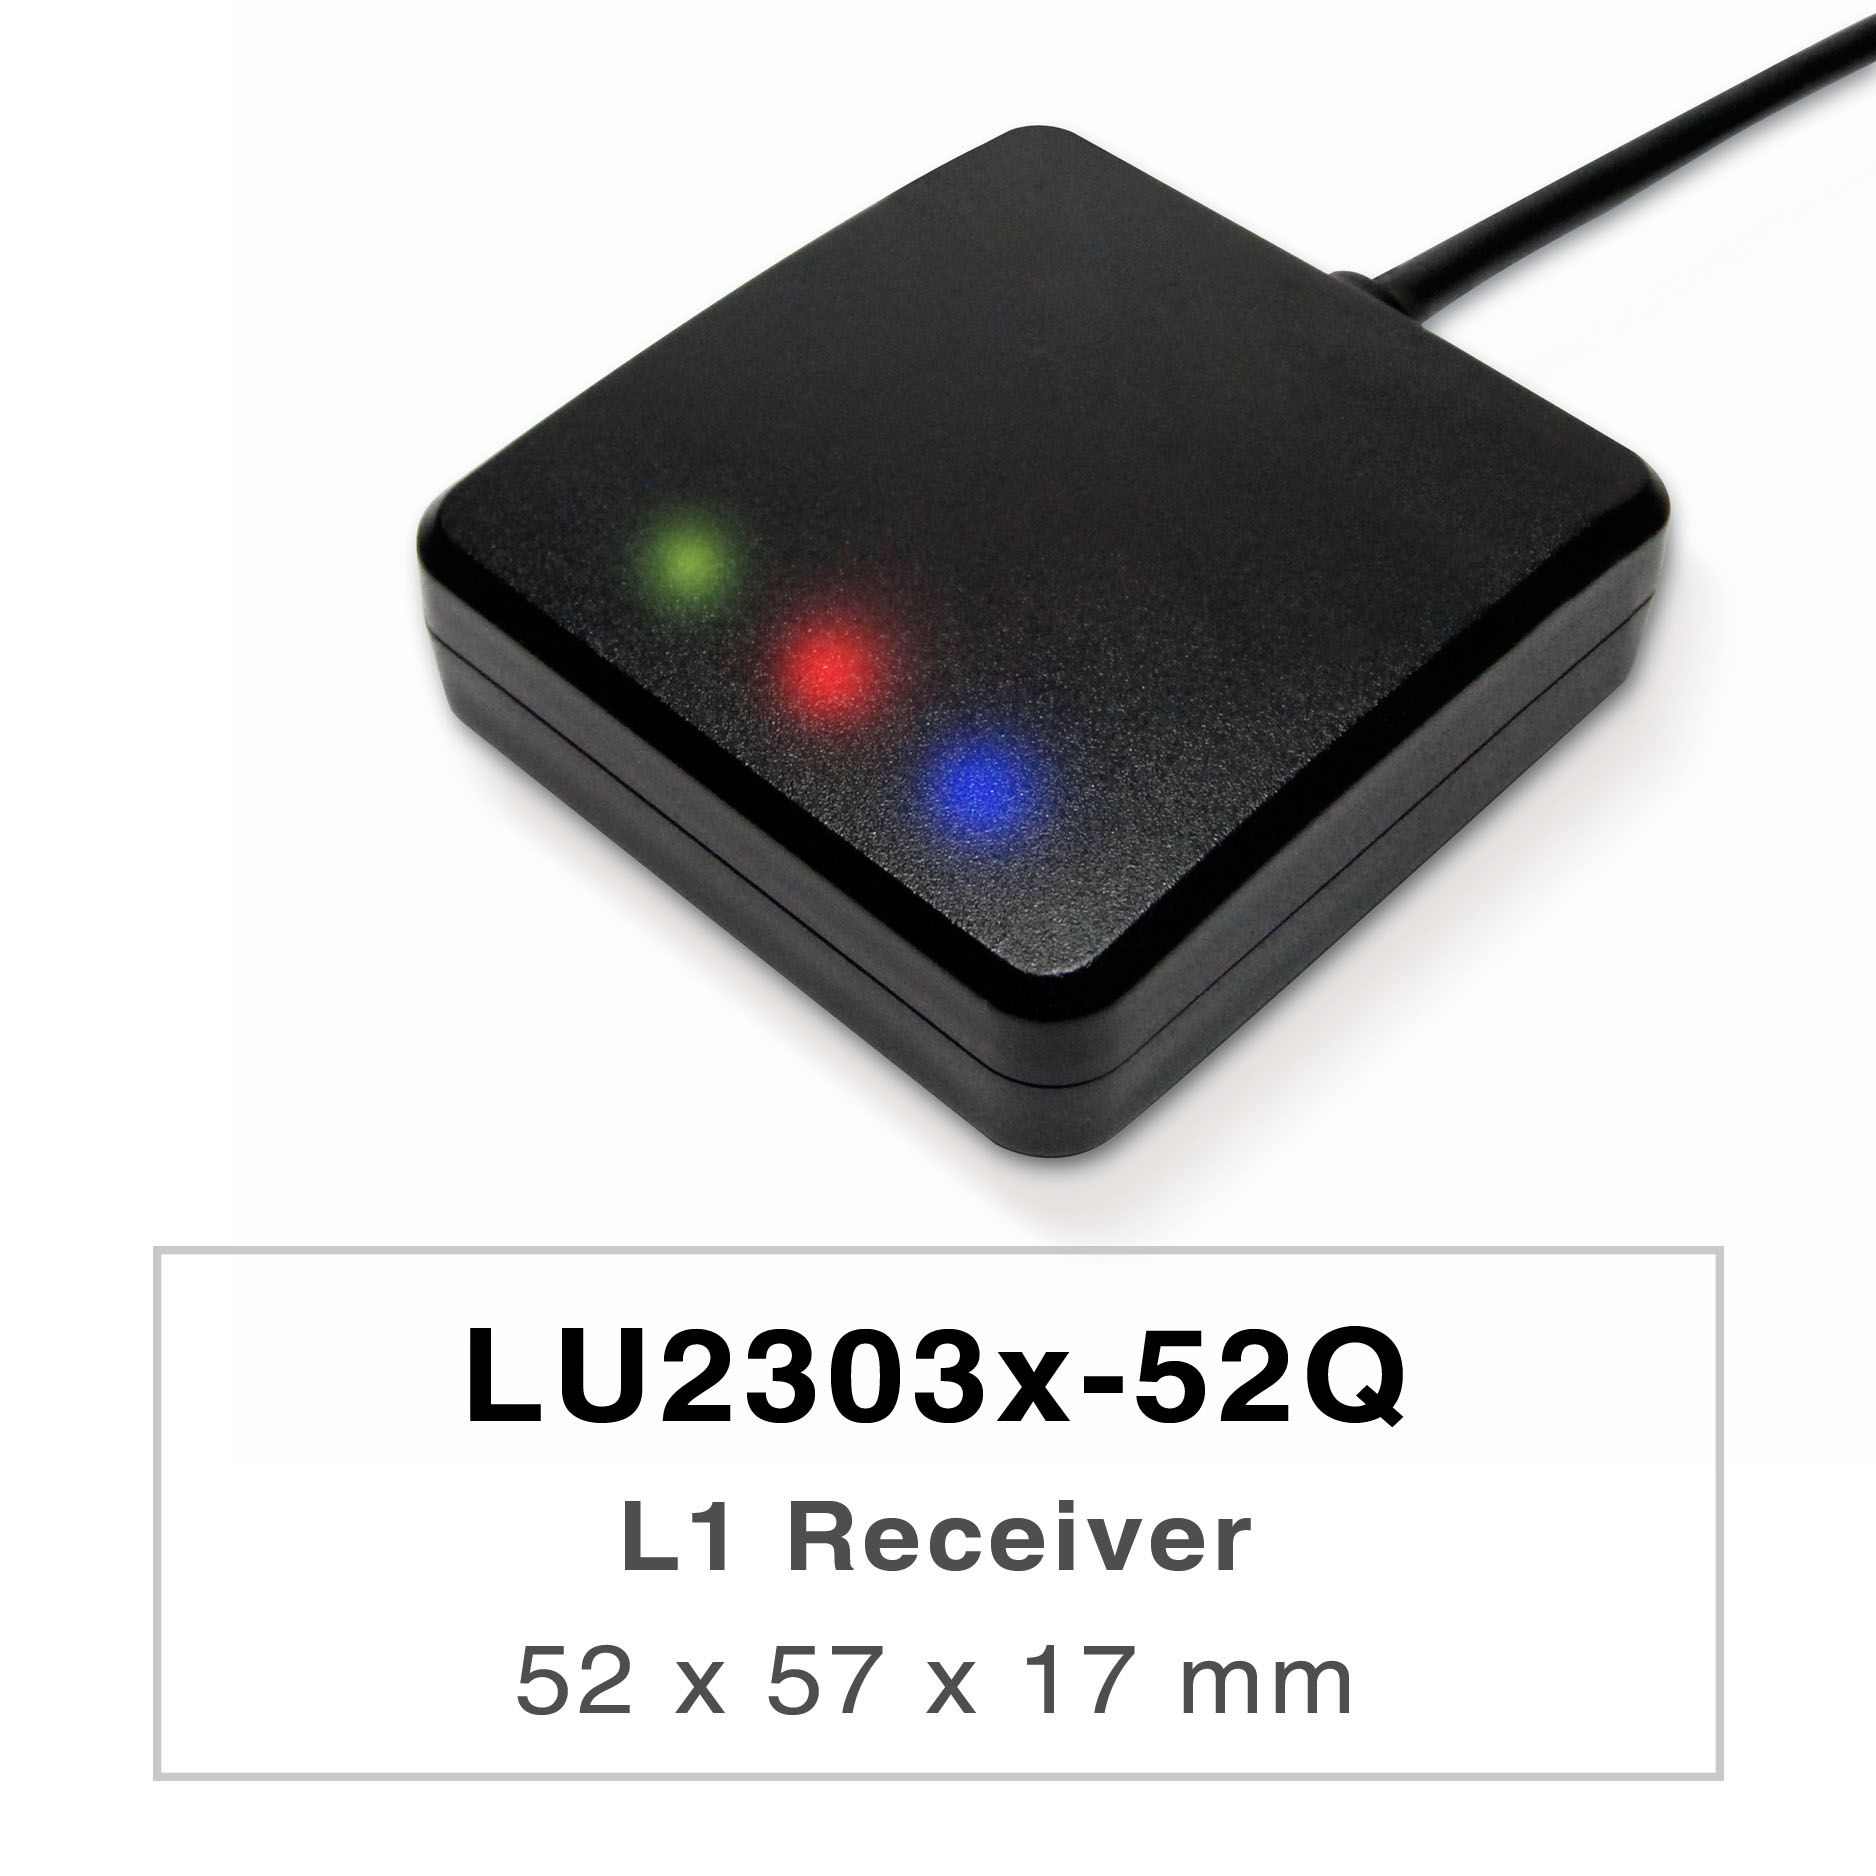 Los productos de la serie LU2303x-Vx son receptores GNSS de doble banda de alto rendimiento (también conocidos como
ratón GNSS) capaces de rastrear todos los sistemas de navegación civil globales (GPS, GLONASS,
BDS, GALILEO, QZSS e IRNSS).